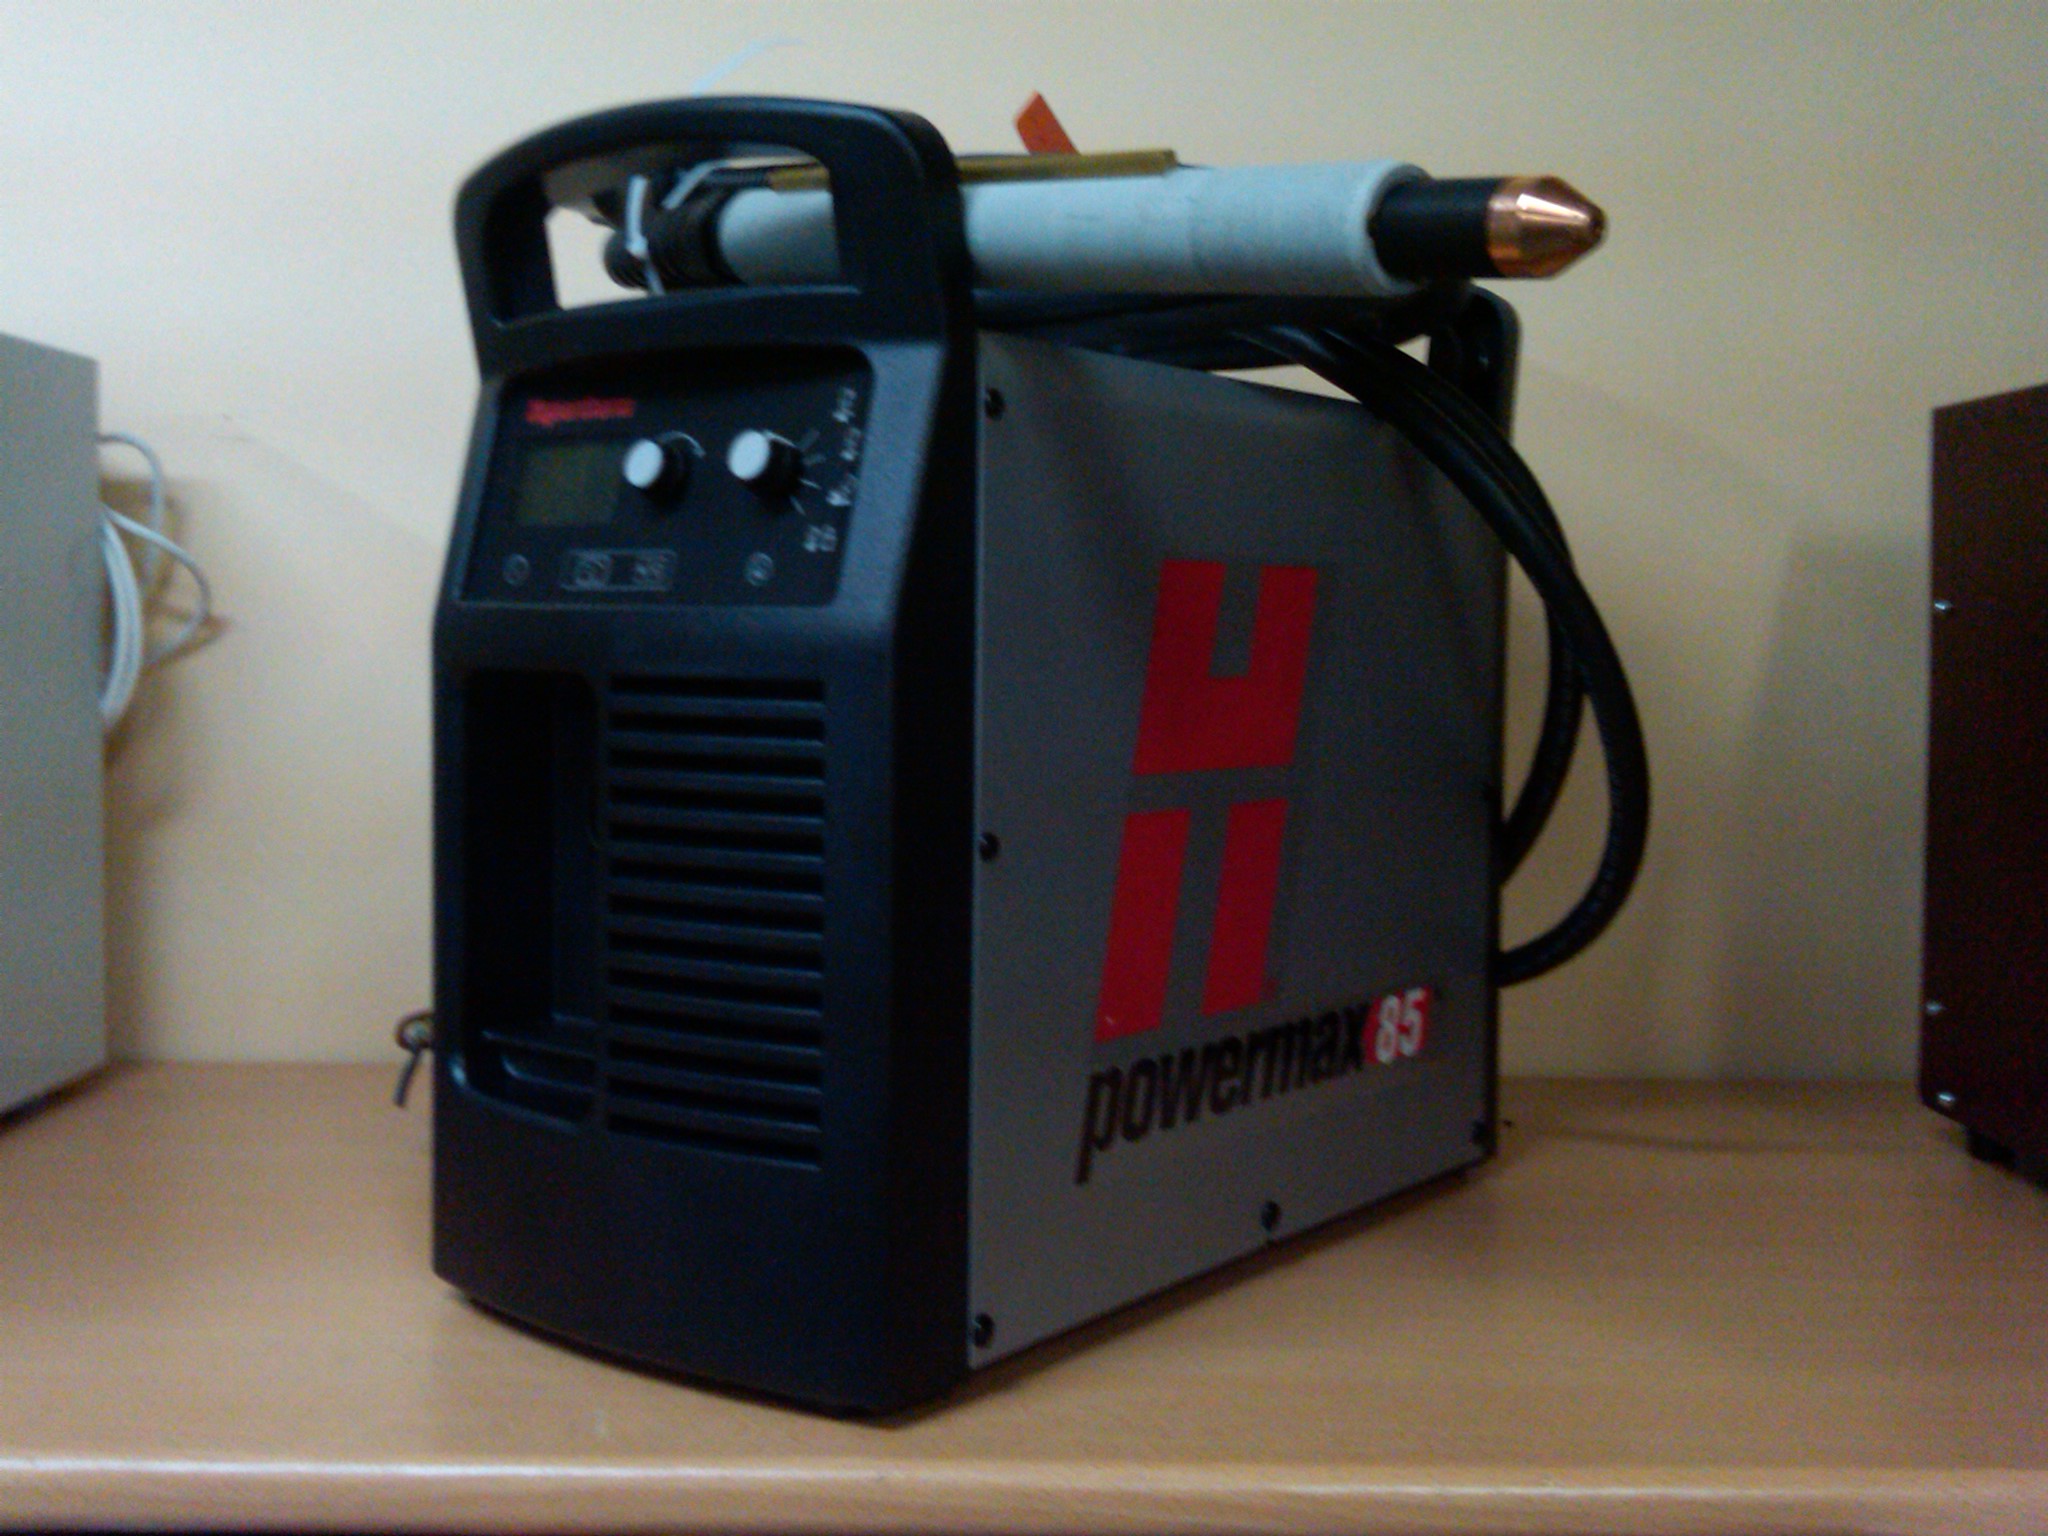 Аппарат для механизированной плазменной резки Hypertherm Powermax 85